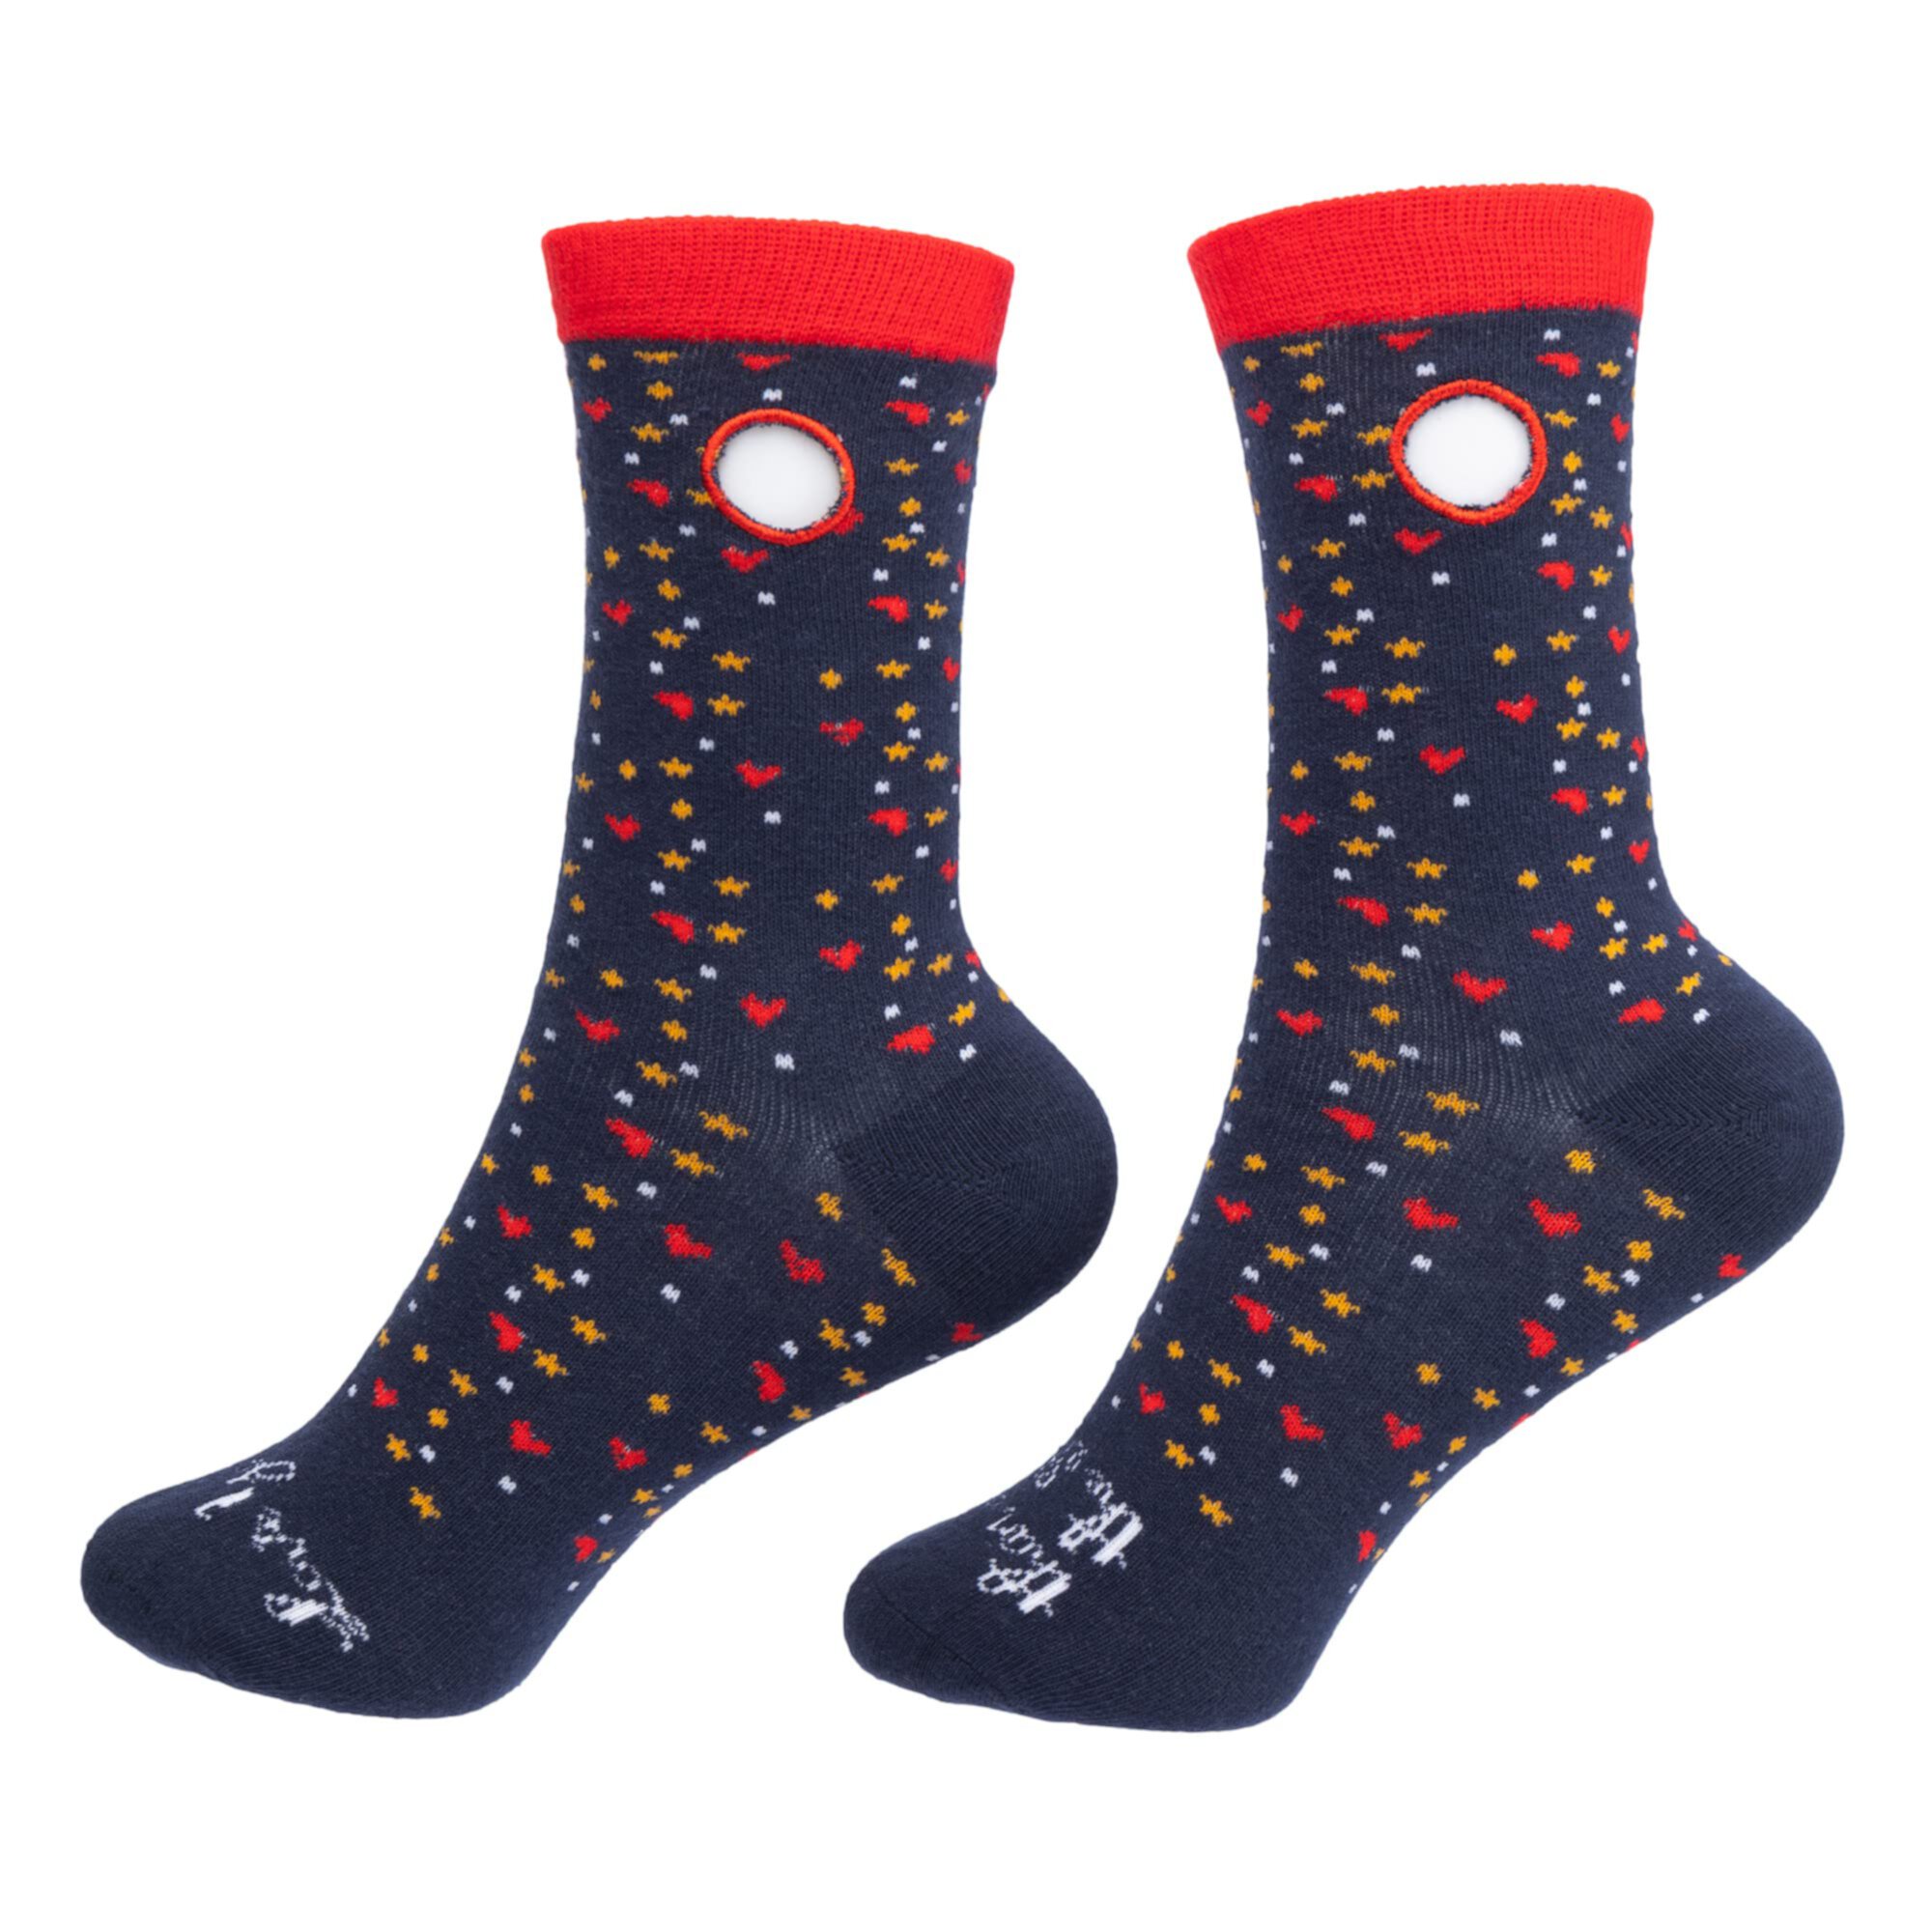 Легкие носки без застежки Love You More Than The Stars (для маленьких детей, для взрослых и для взрослых) Beedlebug Sockietalkies